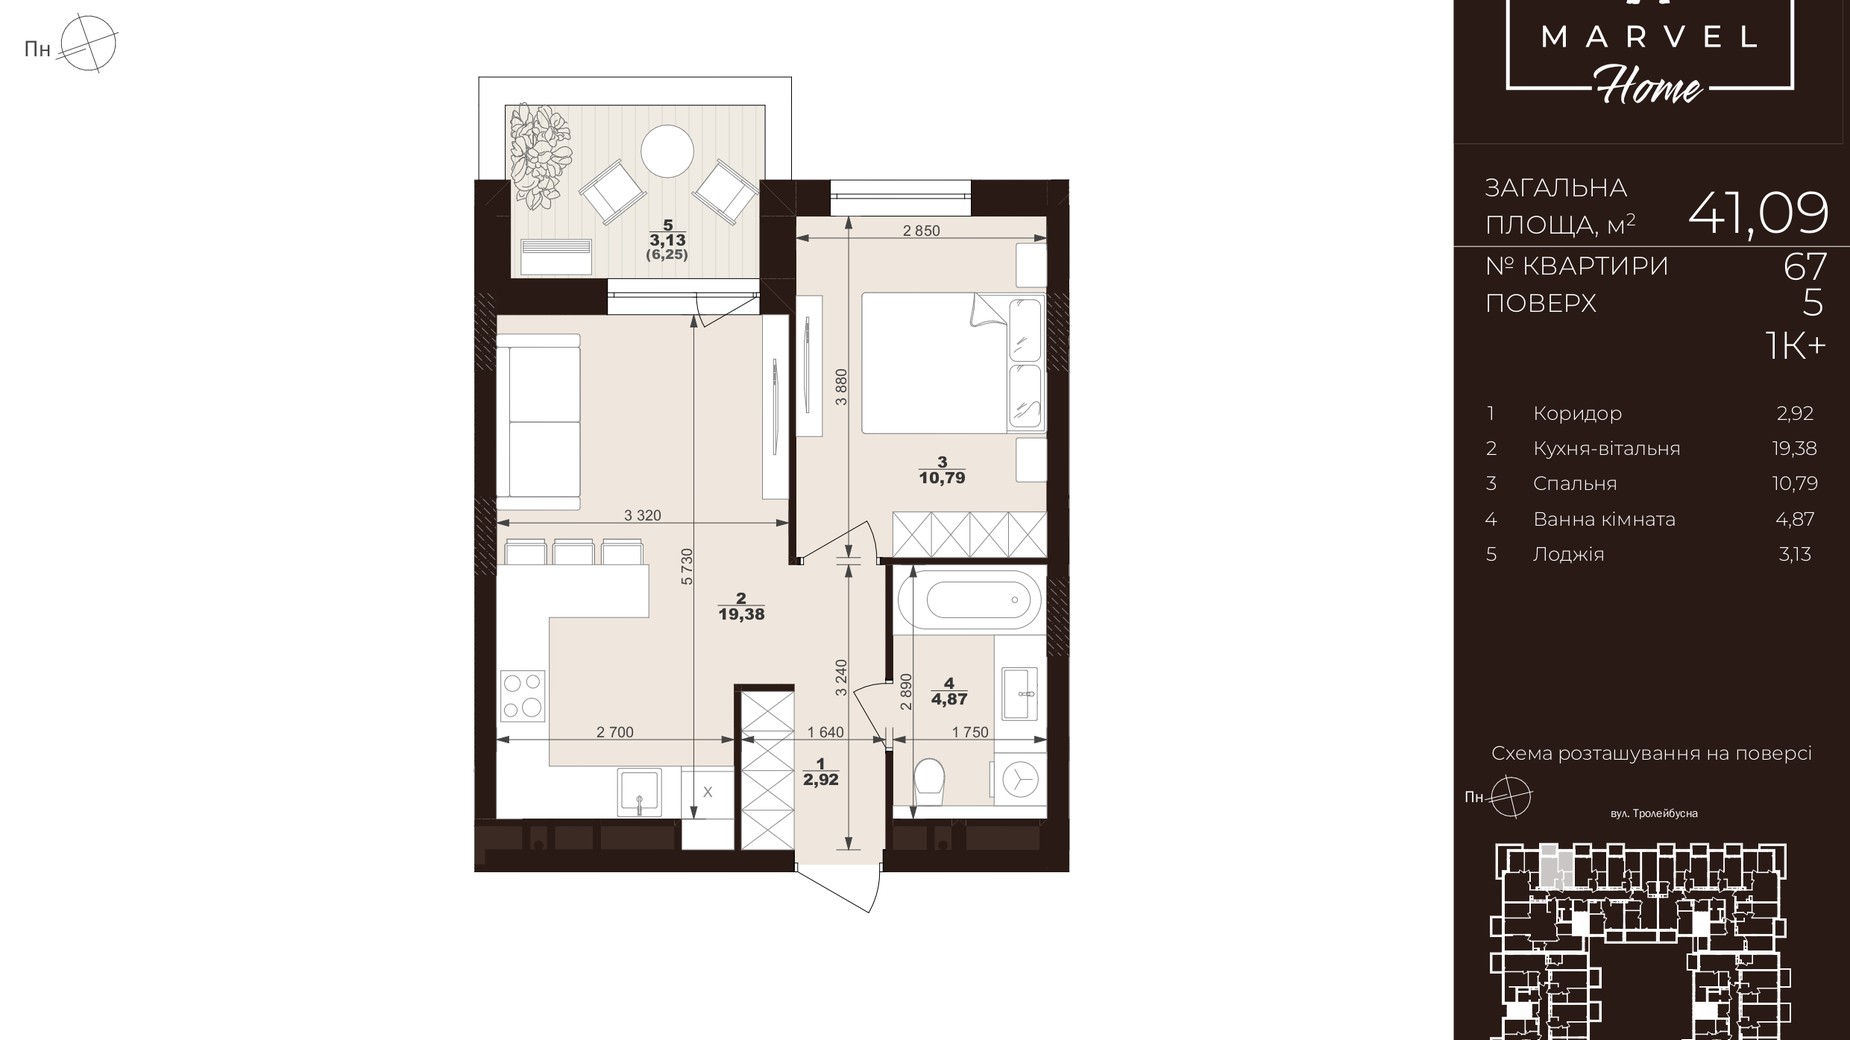 Планировка 1-комнатной квартиры в ЖК Marvel Home 41.09 м², фото 714598